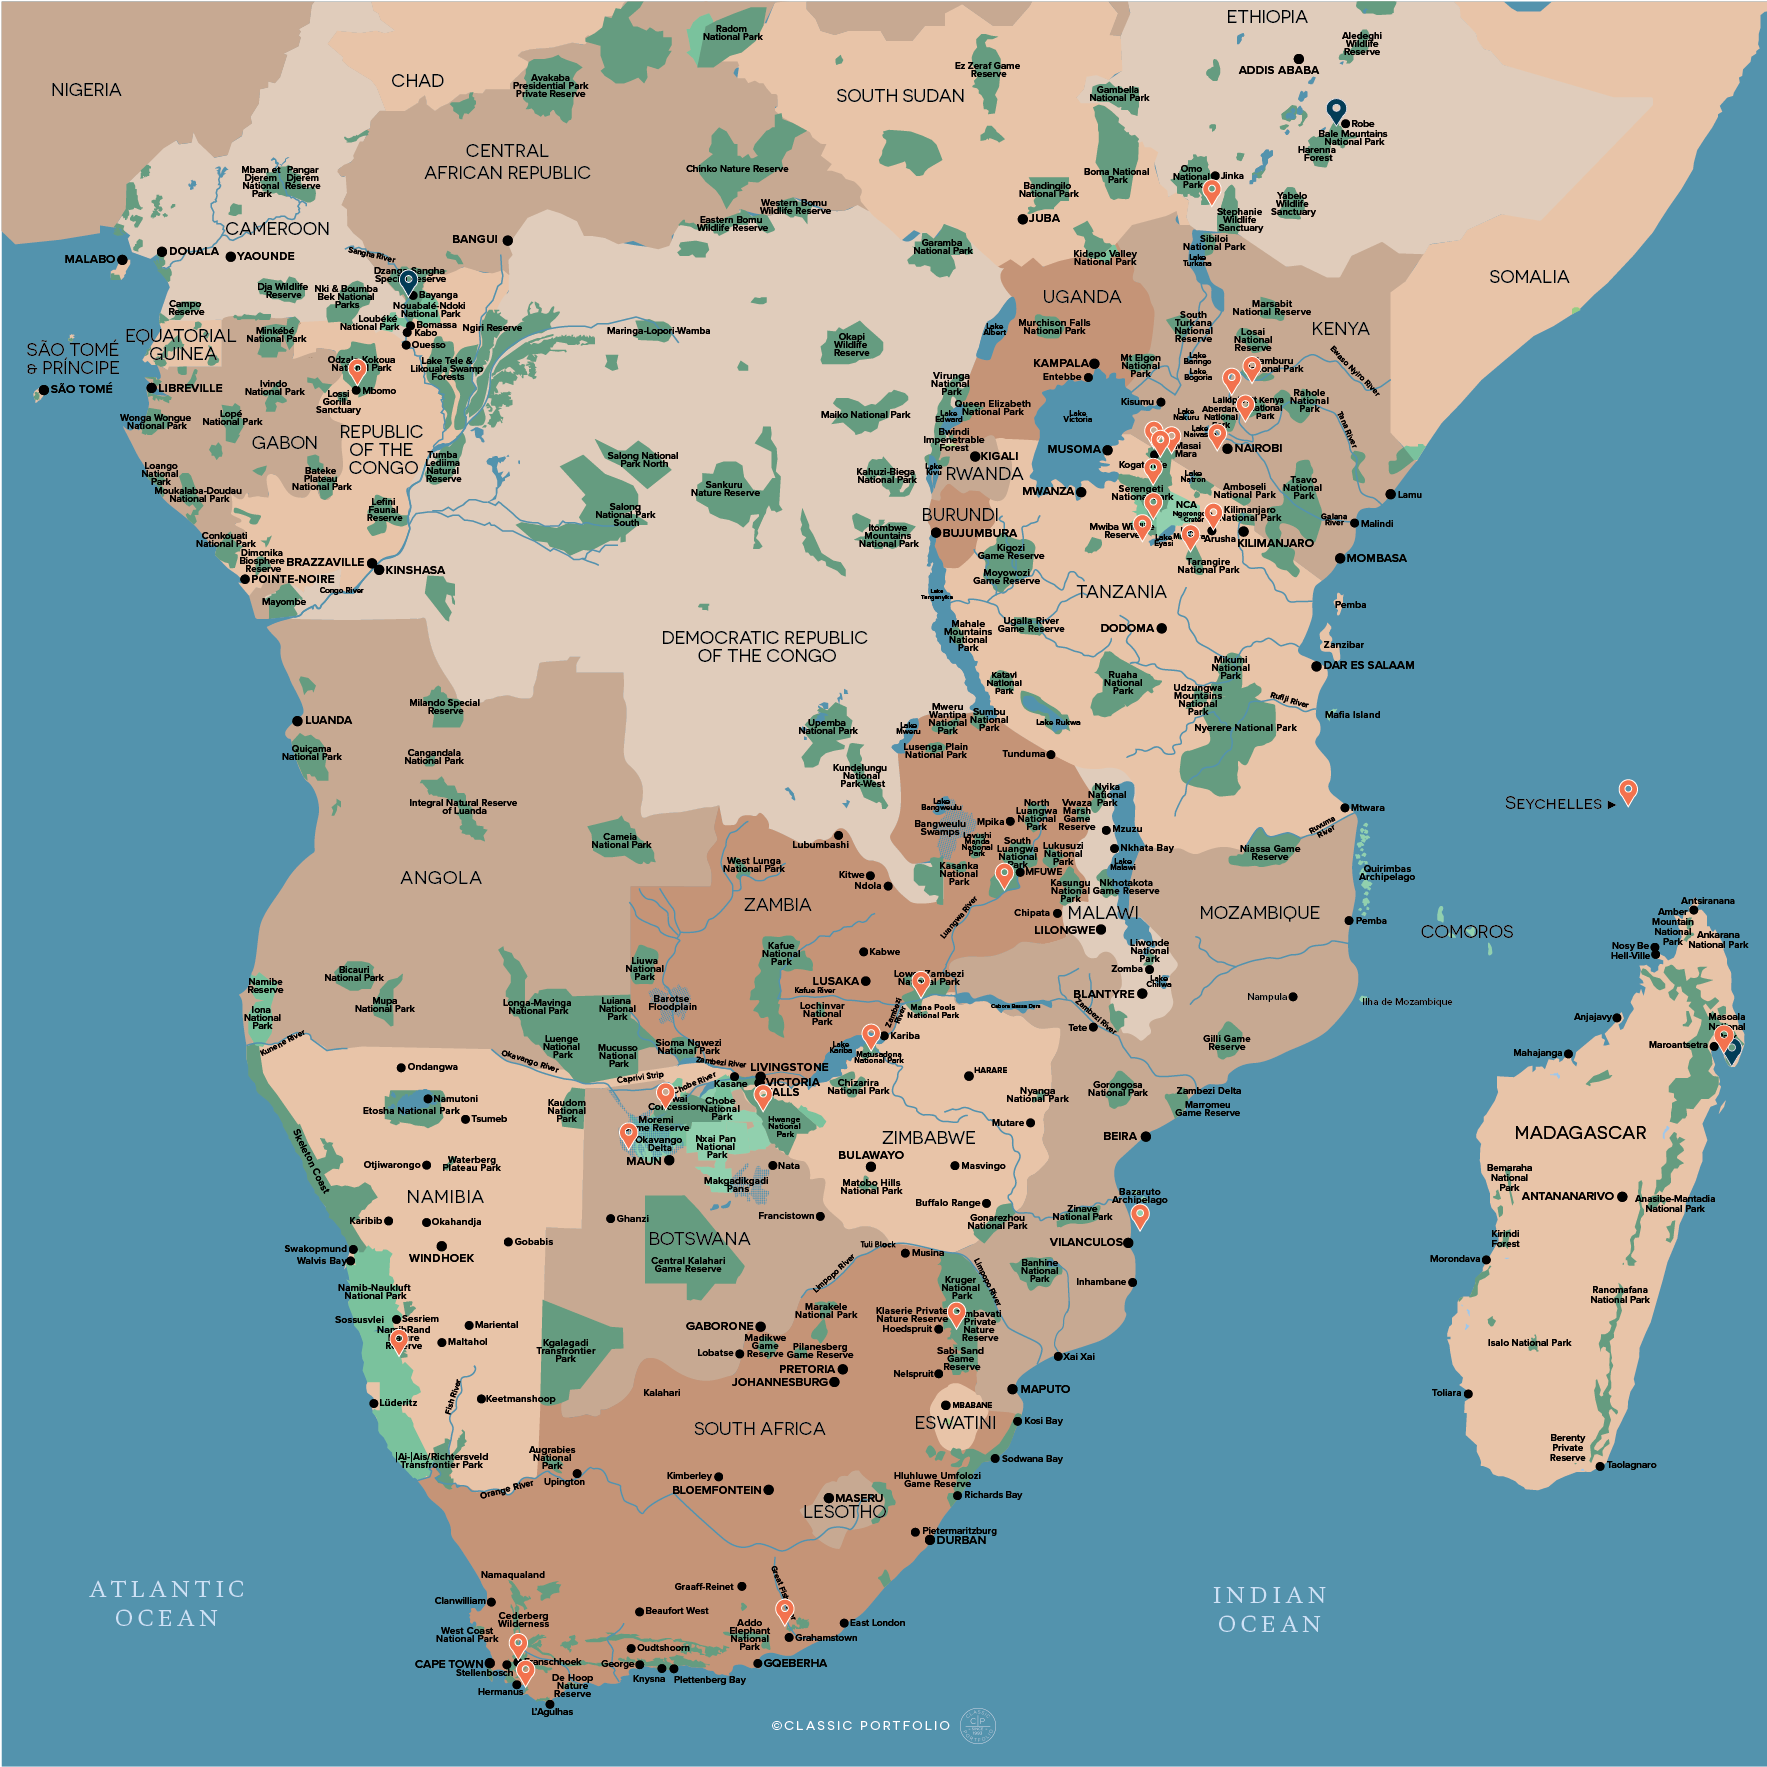 Classic Portfolio Africa Map